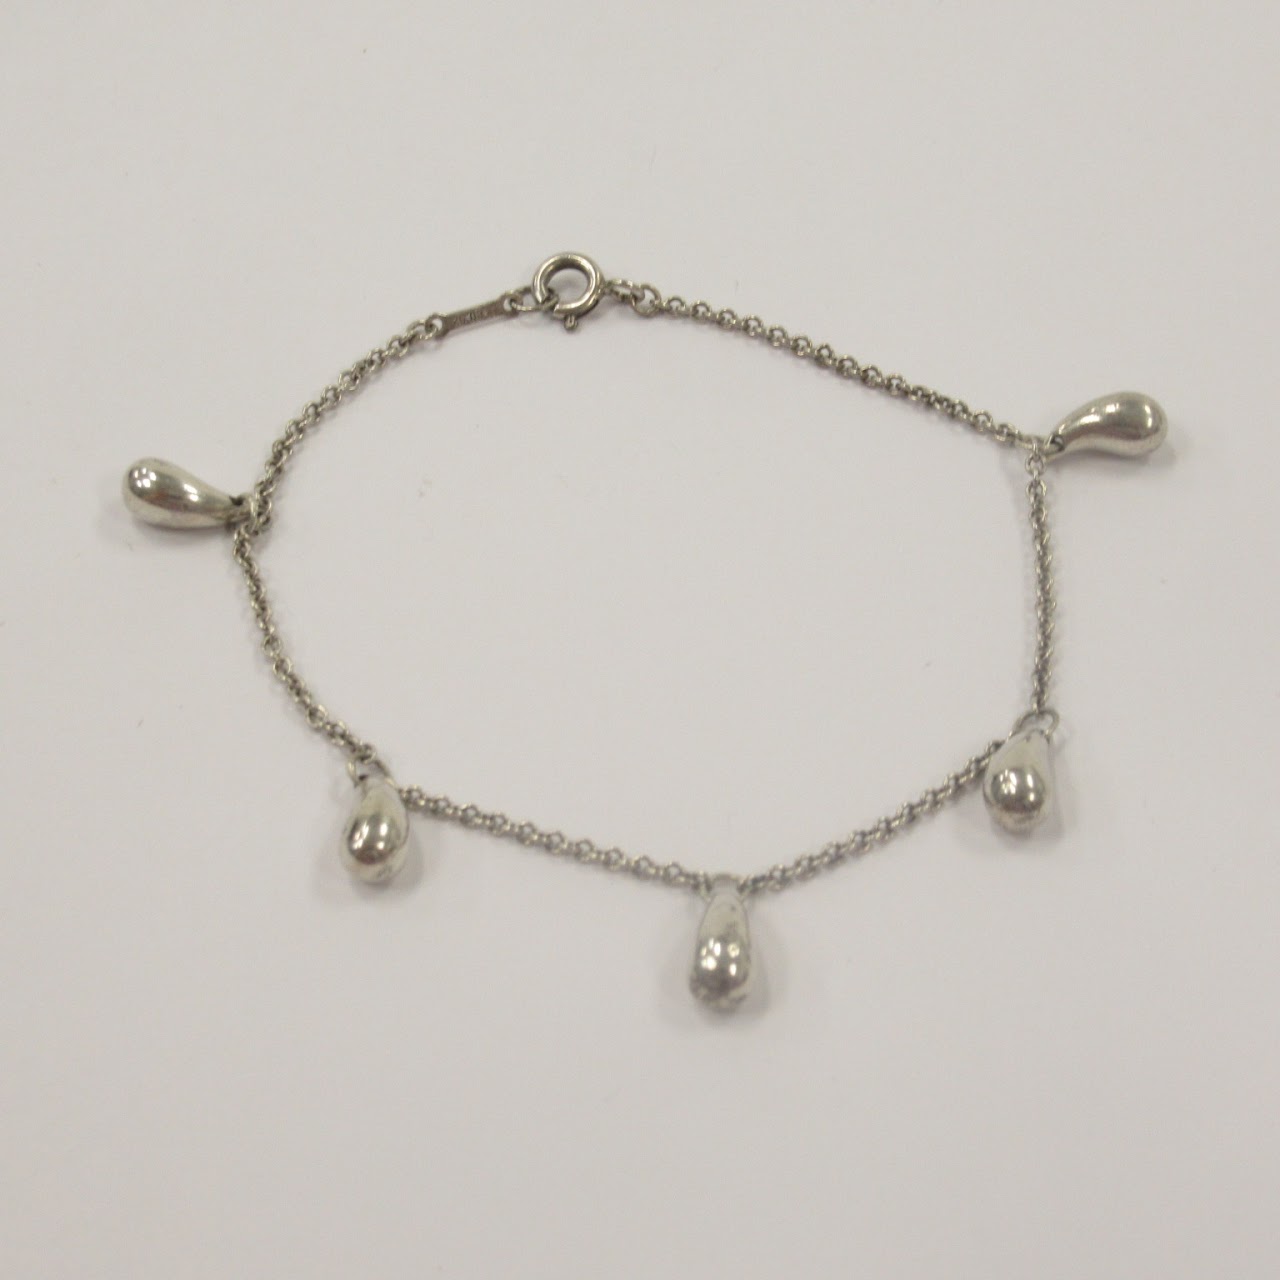 Tiffany & Co. X Elsa Peretti Sterling Silver Teardrop Necklace, Bracelet, and Earring Set